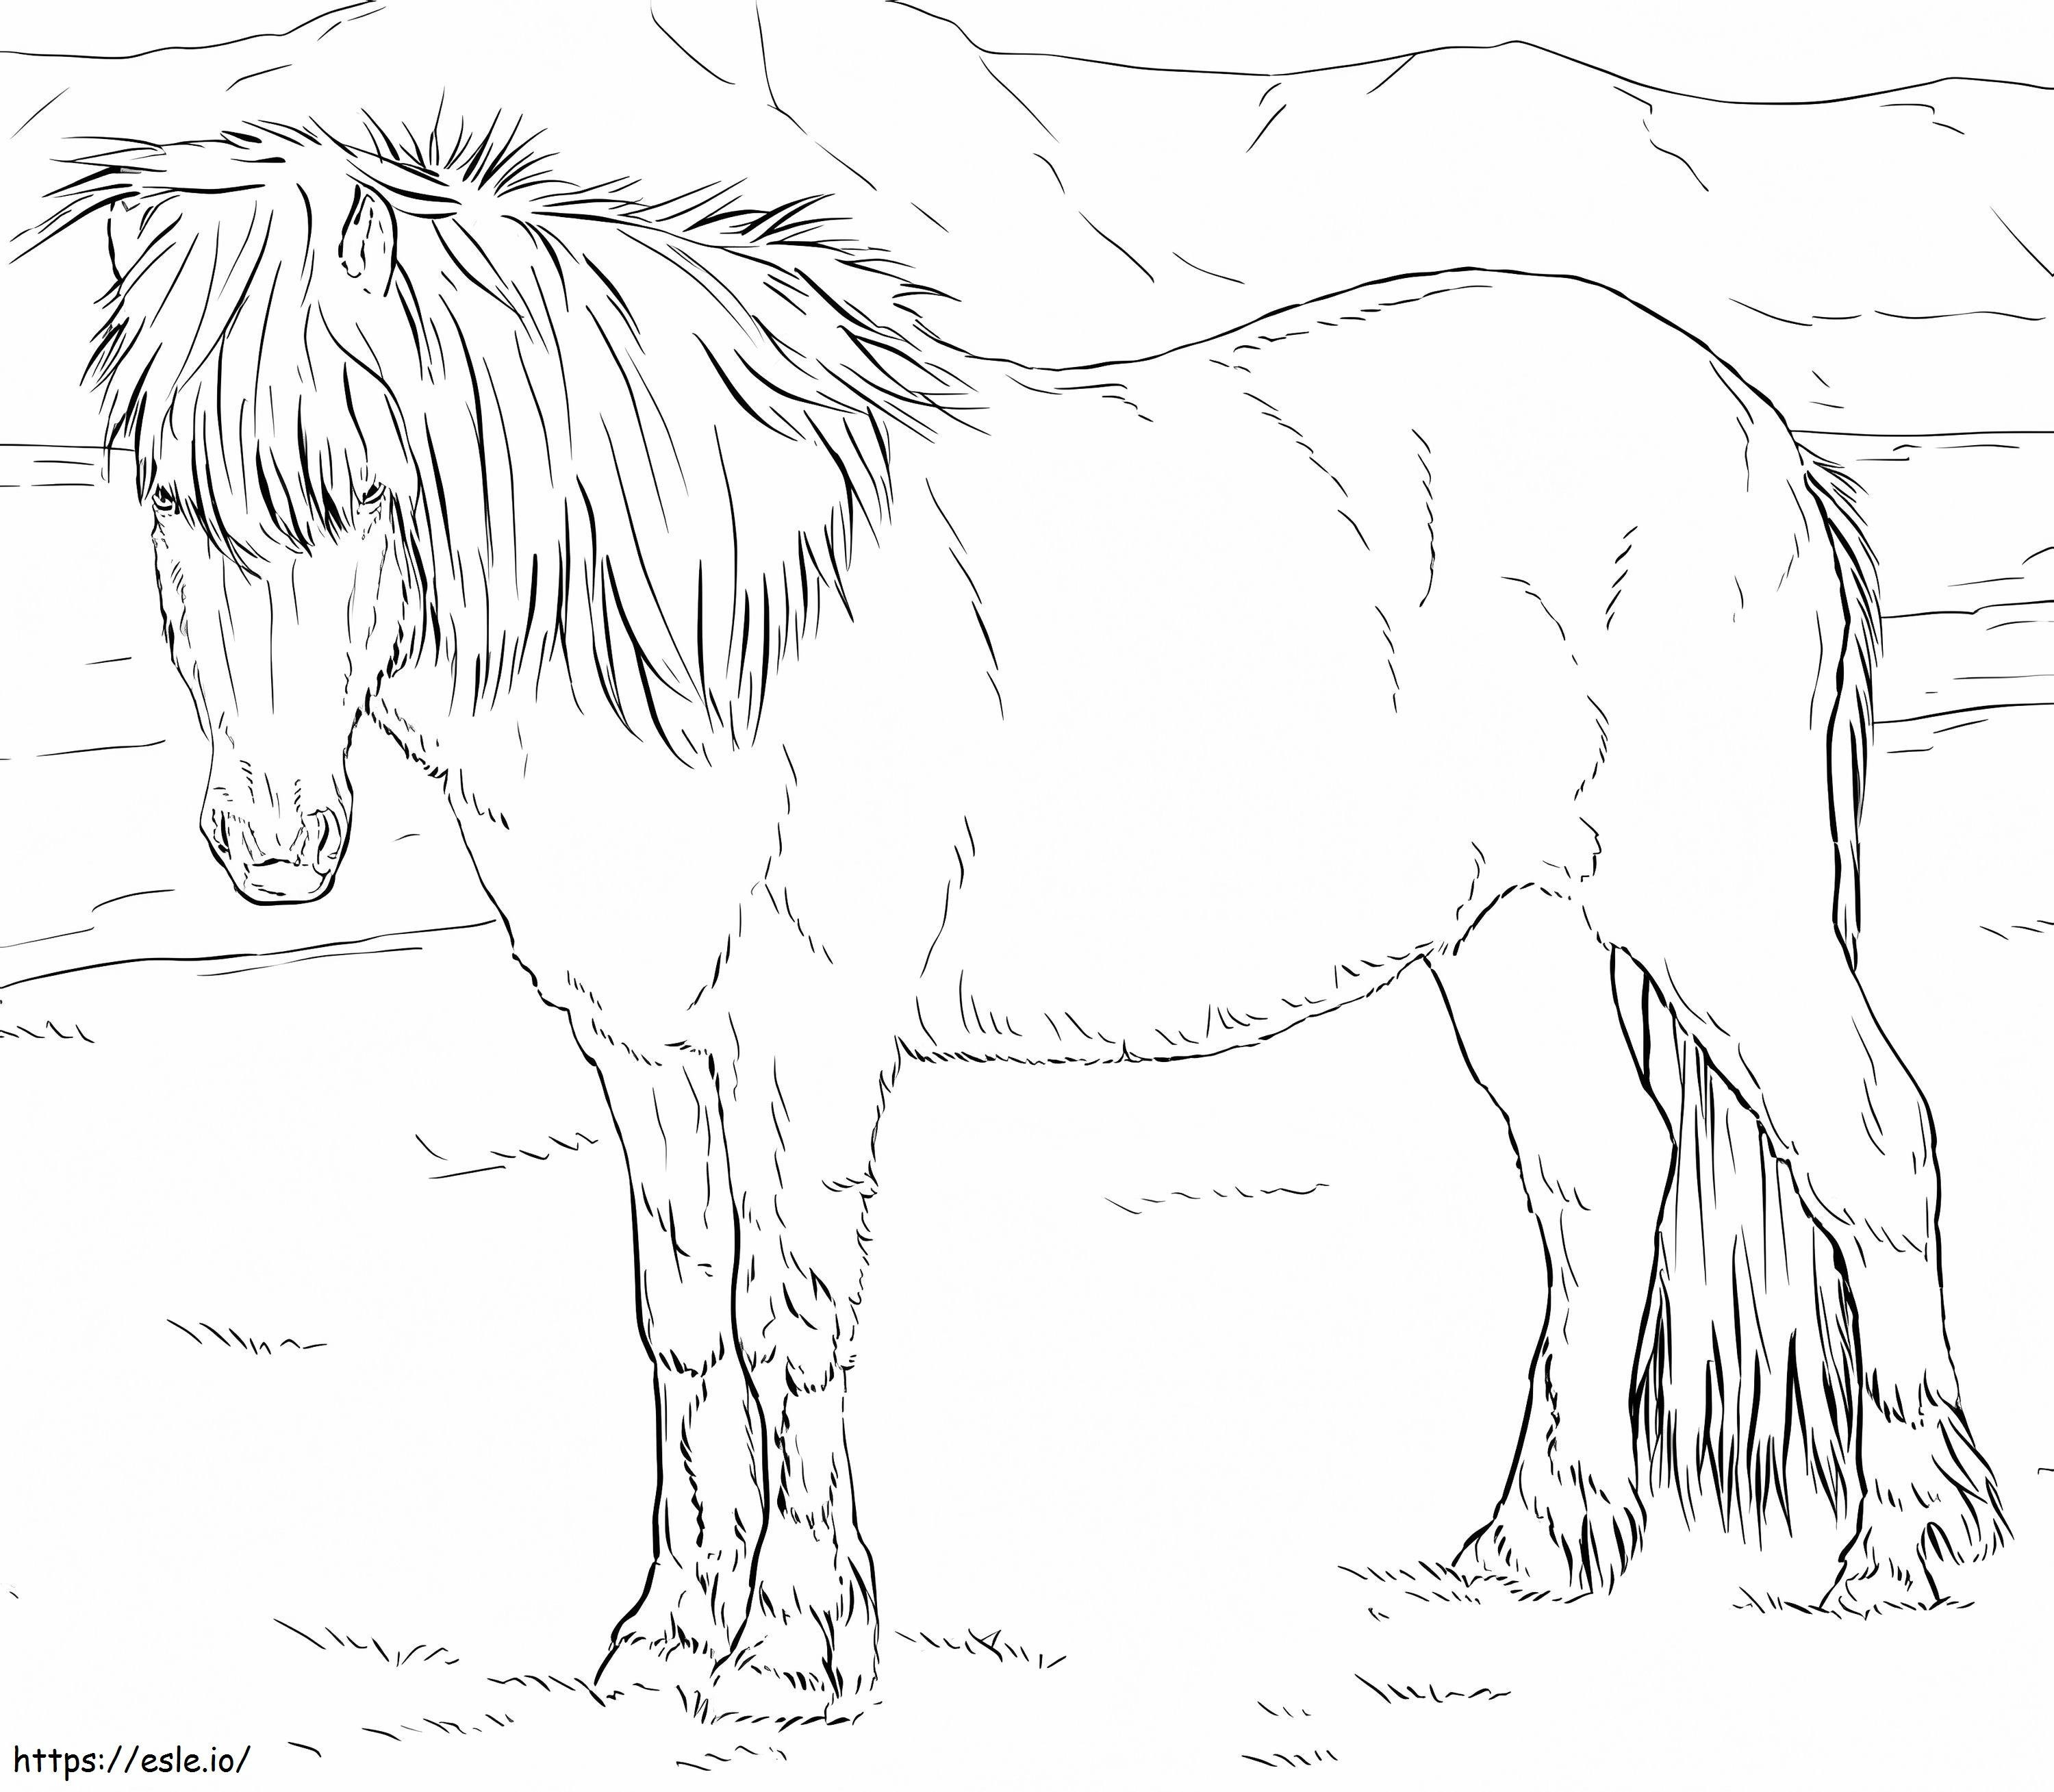 Cavalo islandês realista para colorir